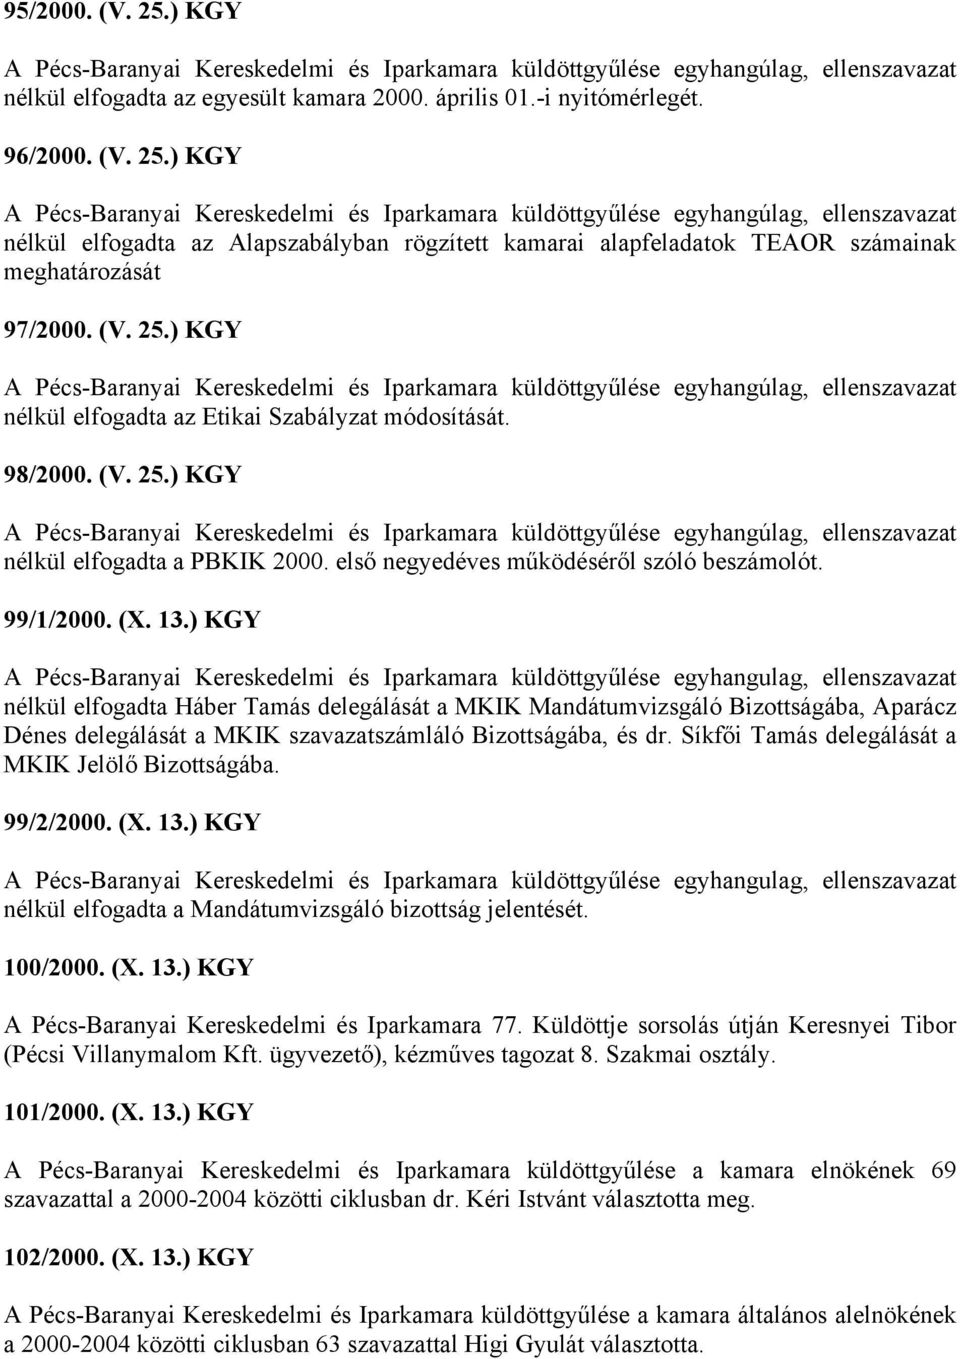 ) KGY A Pécs-Baranyai Kereskedelmi és Iparkamara küldöttgyűlése egyhangulag, ellenszavazat nélkül elfogadta Háber Tamás delegálását a MKIK Mandátumvizsgáló Bizottságába, Aparácz Dénes delegálását a